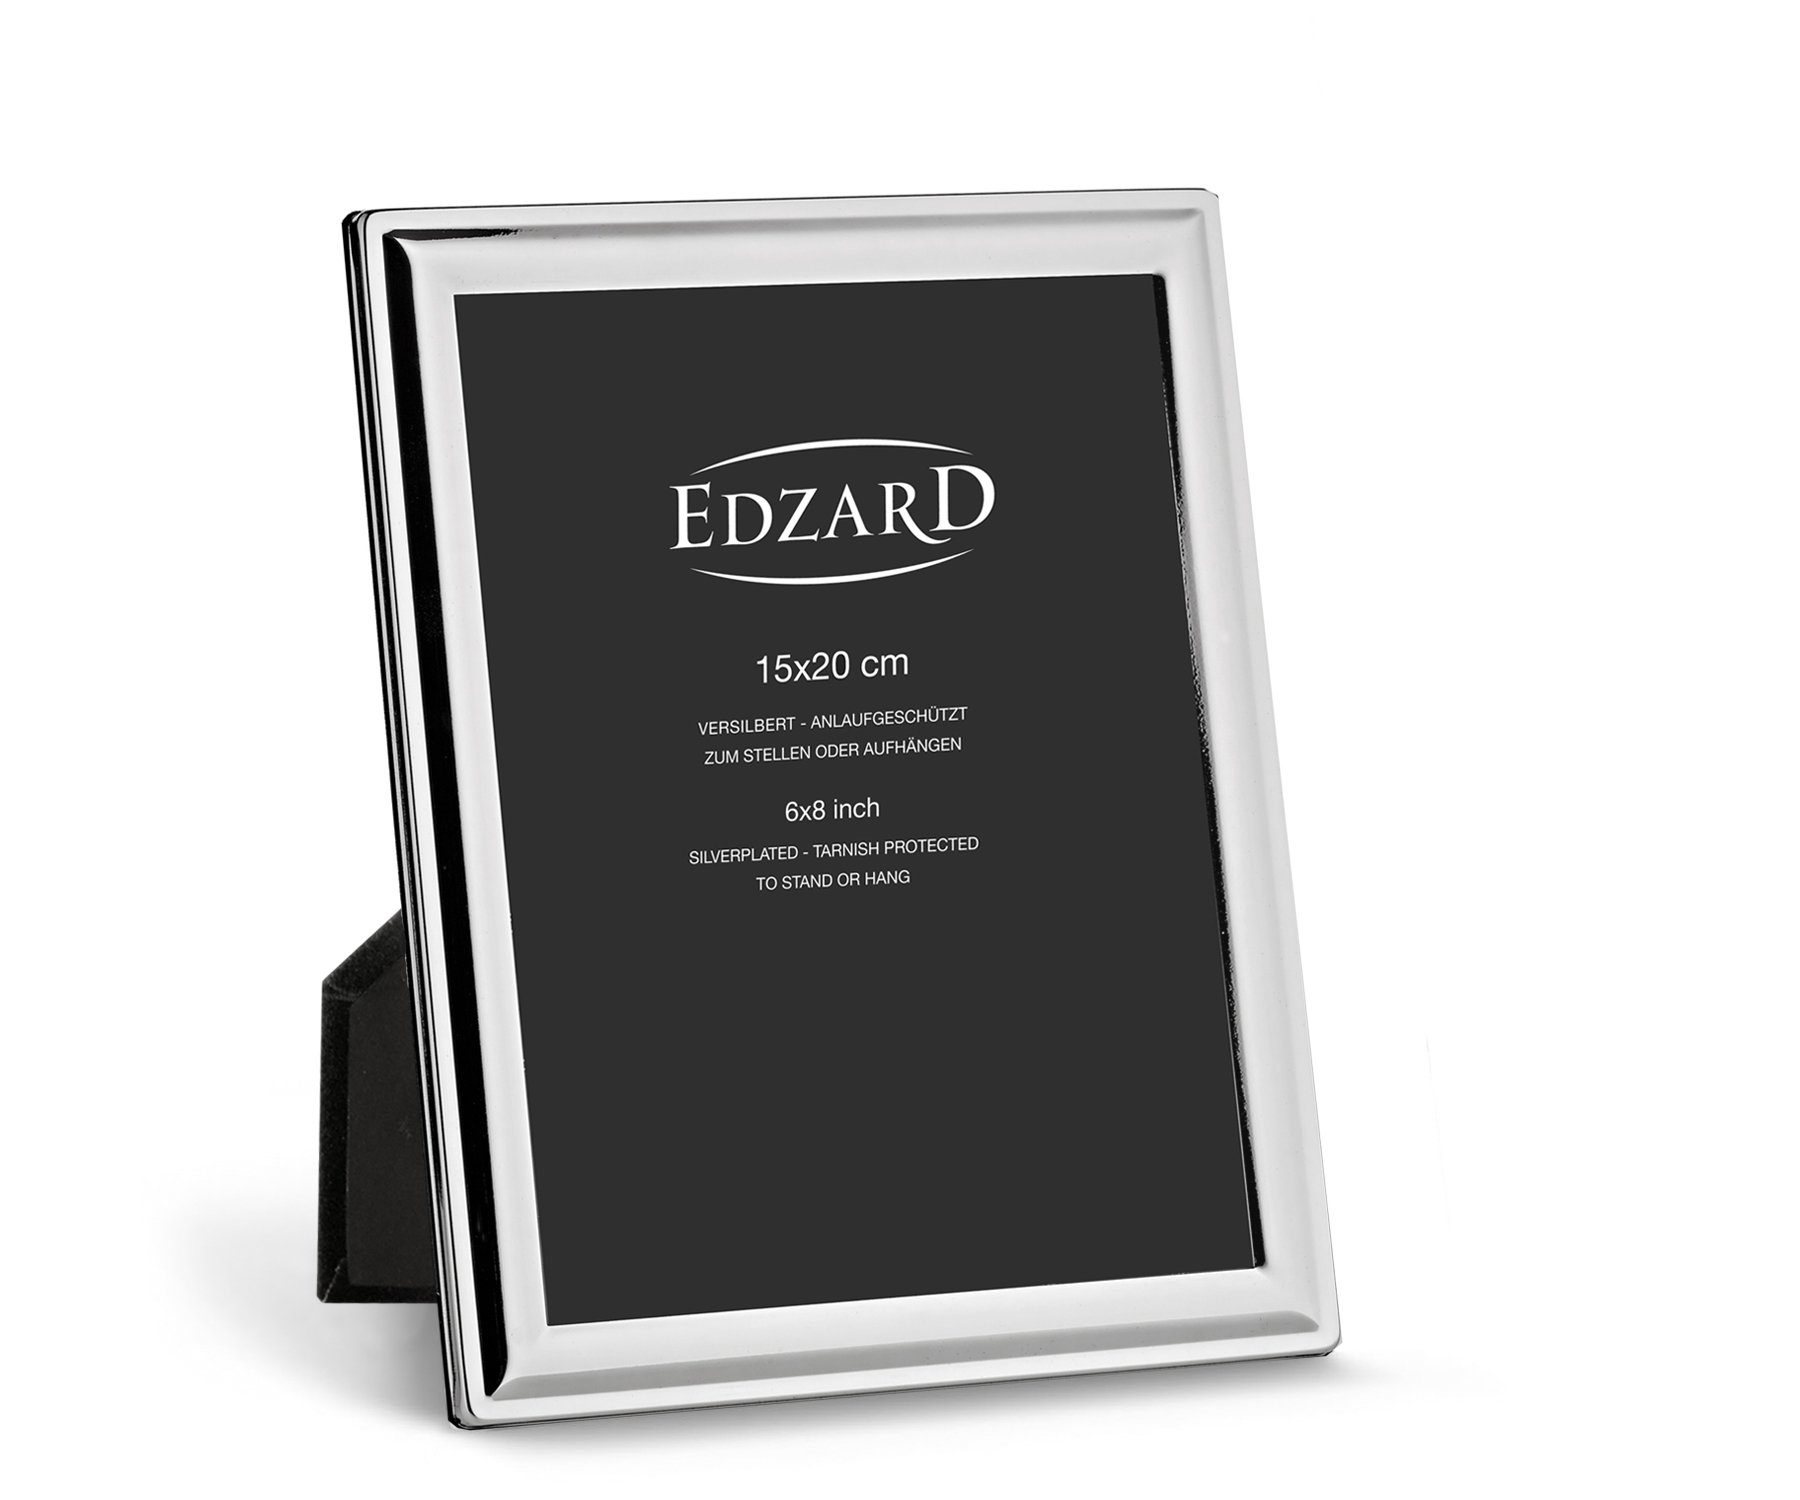 EDZARD Bilderrahmen Terni, edel versilbert und anlaufgeschützt, für 15x20 cm Foto